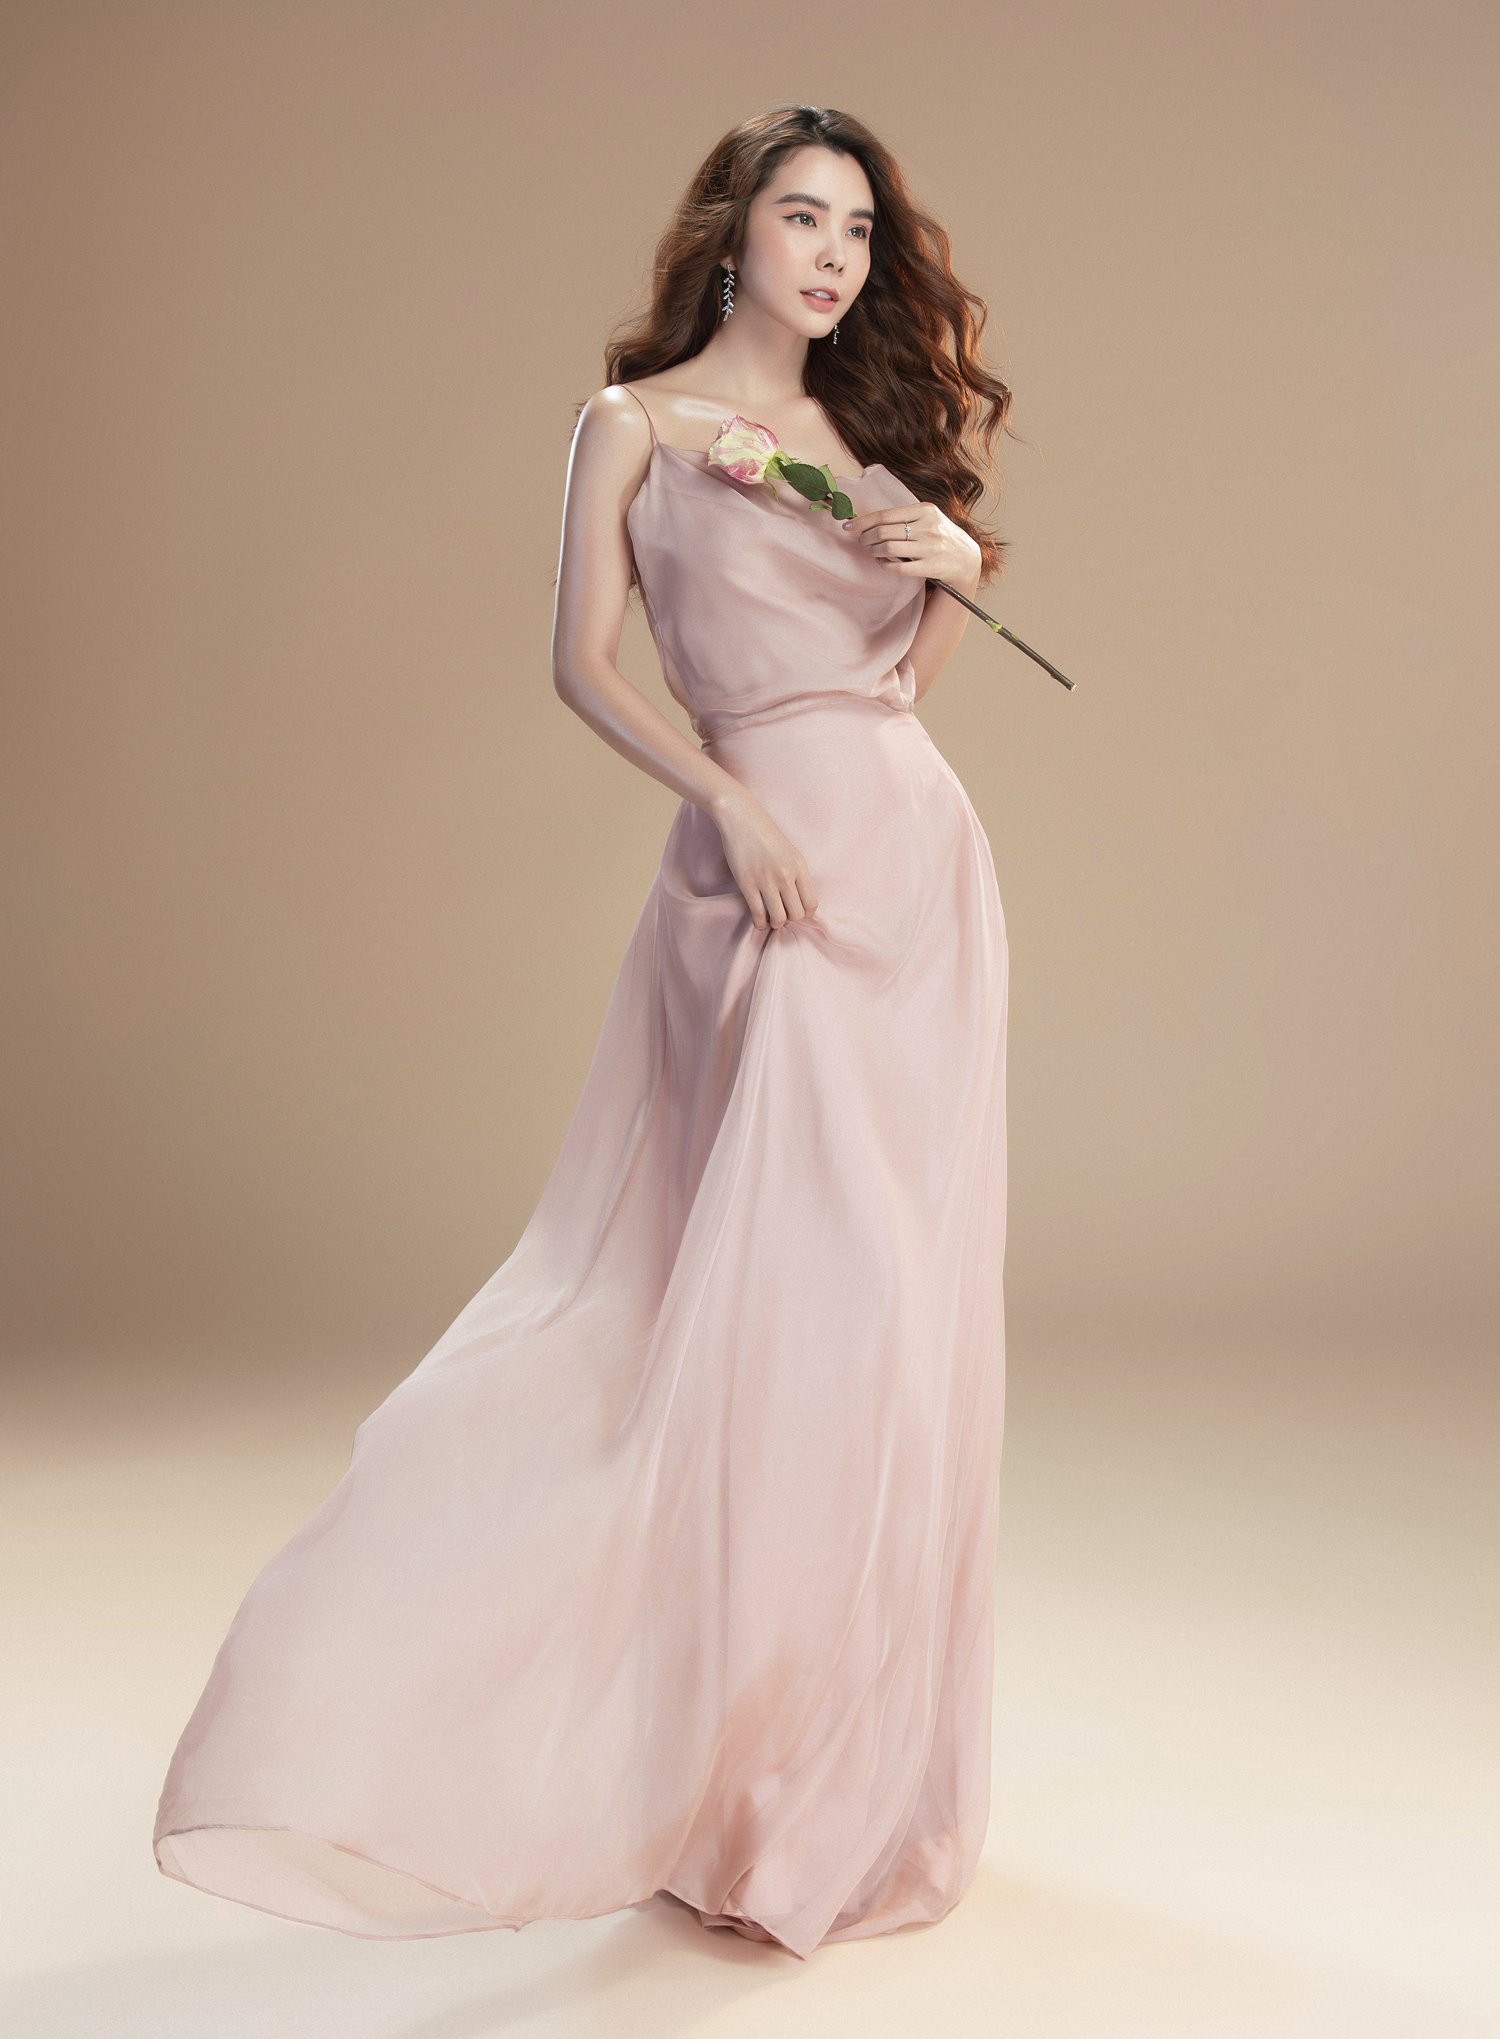 Hoa hậu Huỳnh Vy đẹp rạng ngời trong bộ ảnh đầy khí chất - Ảnh 2.